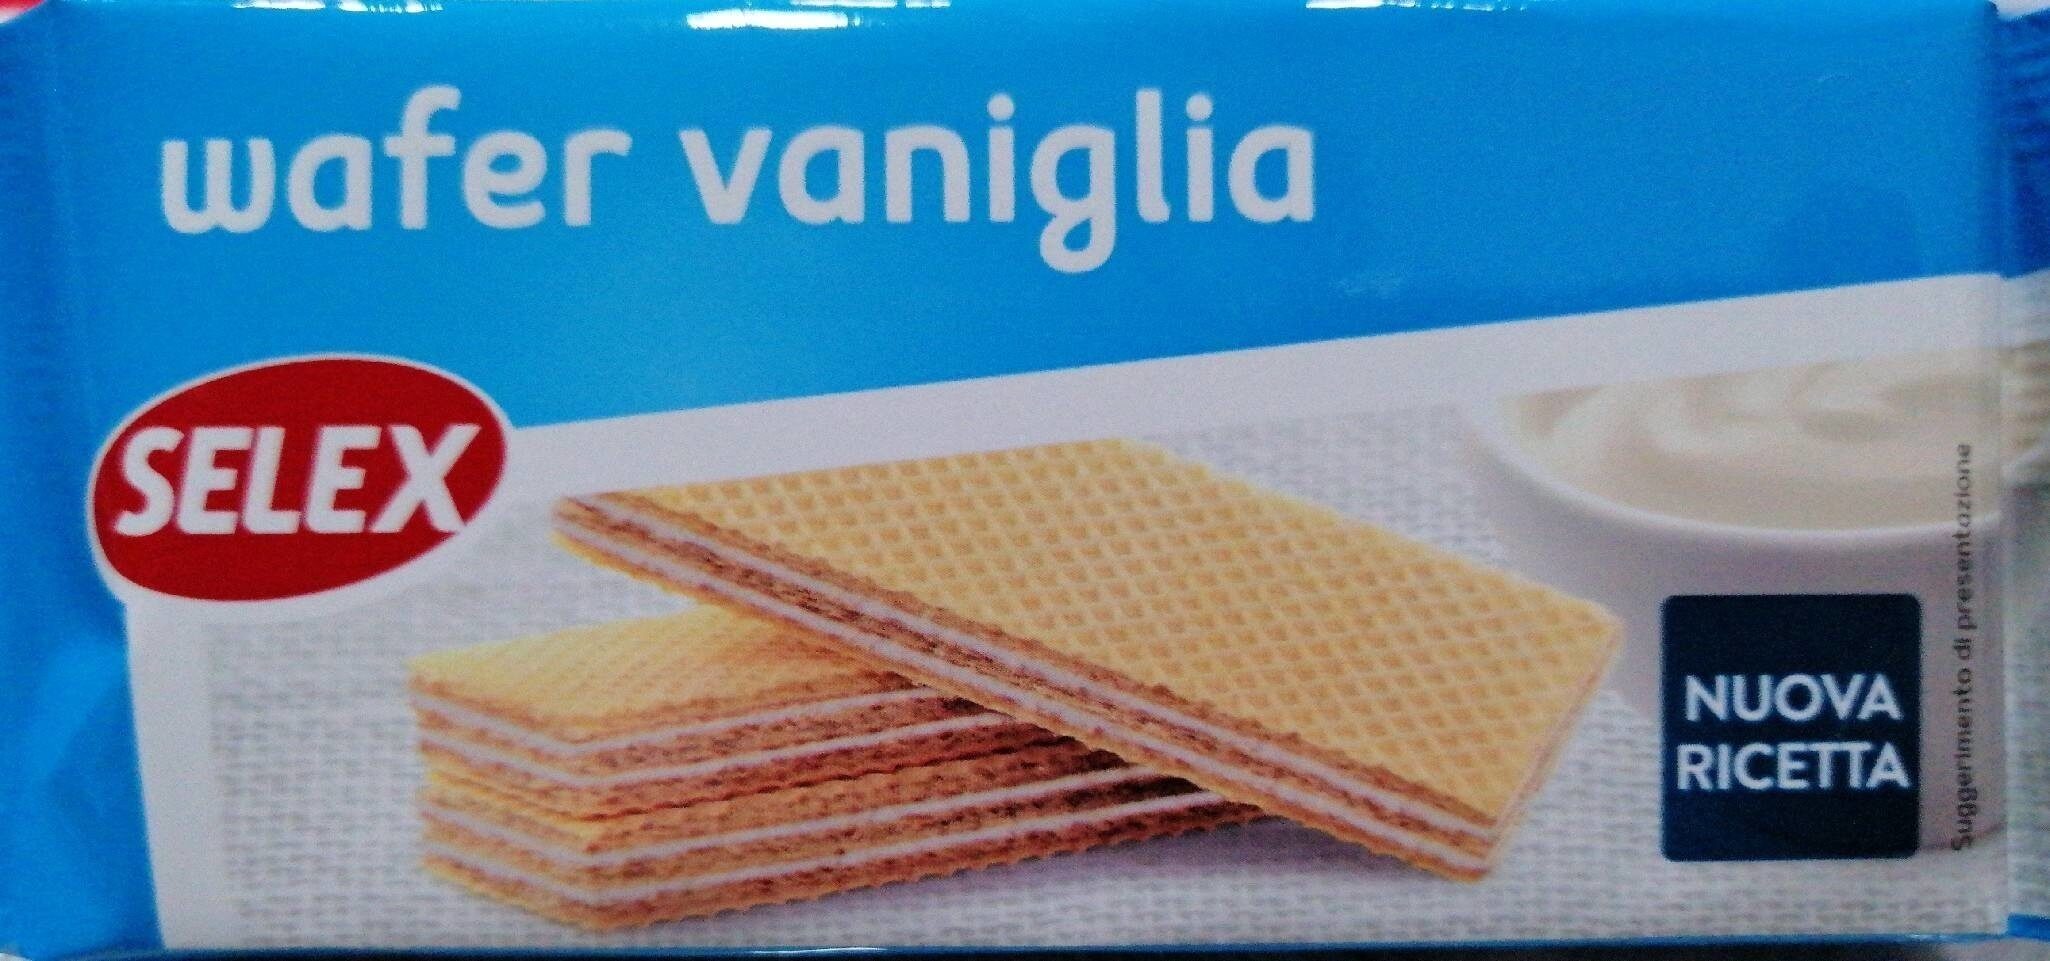 Wafer vaniglia - Prodotto